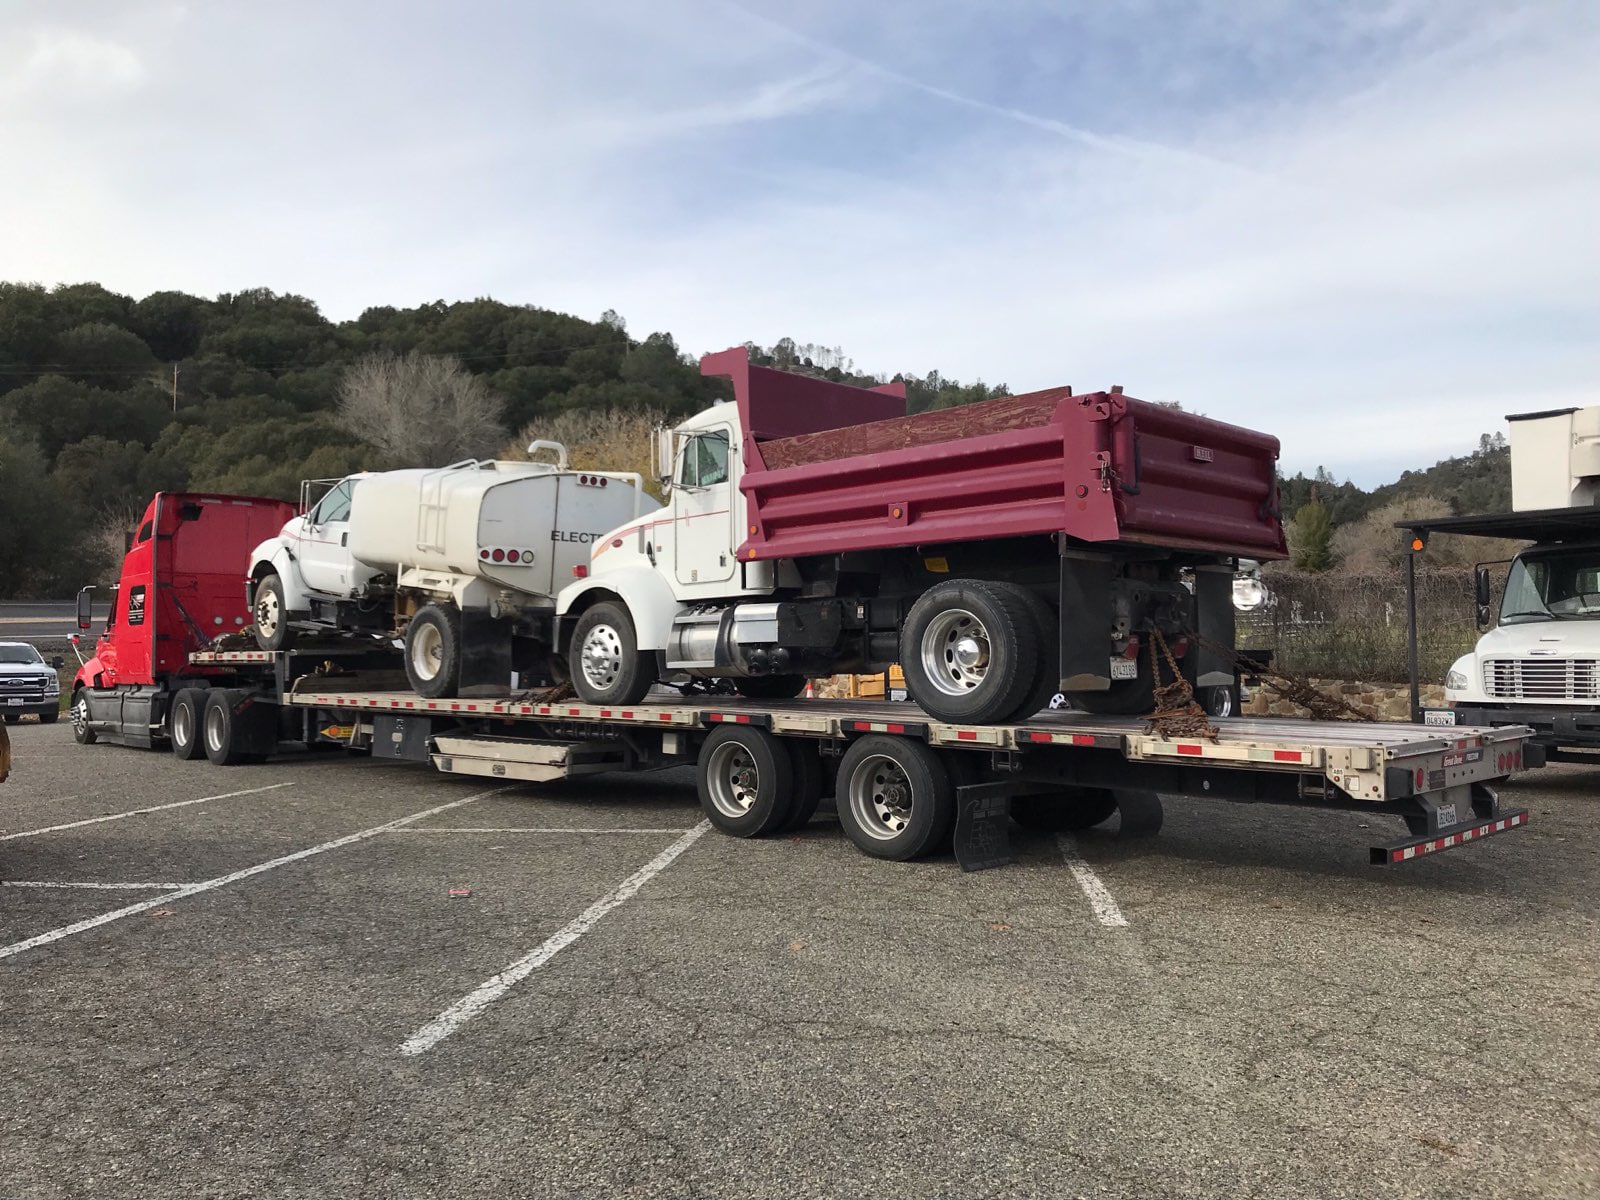 Dump truck on trailer